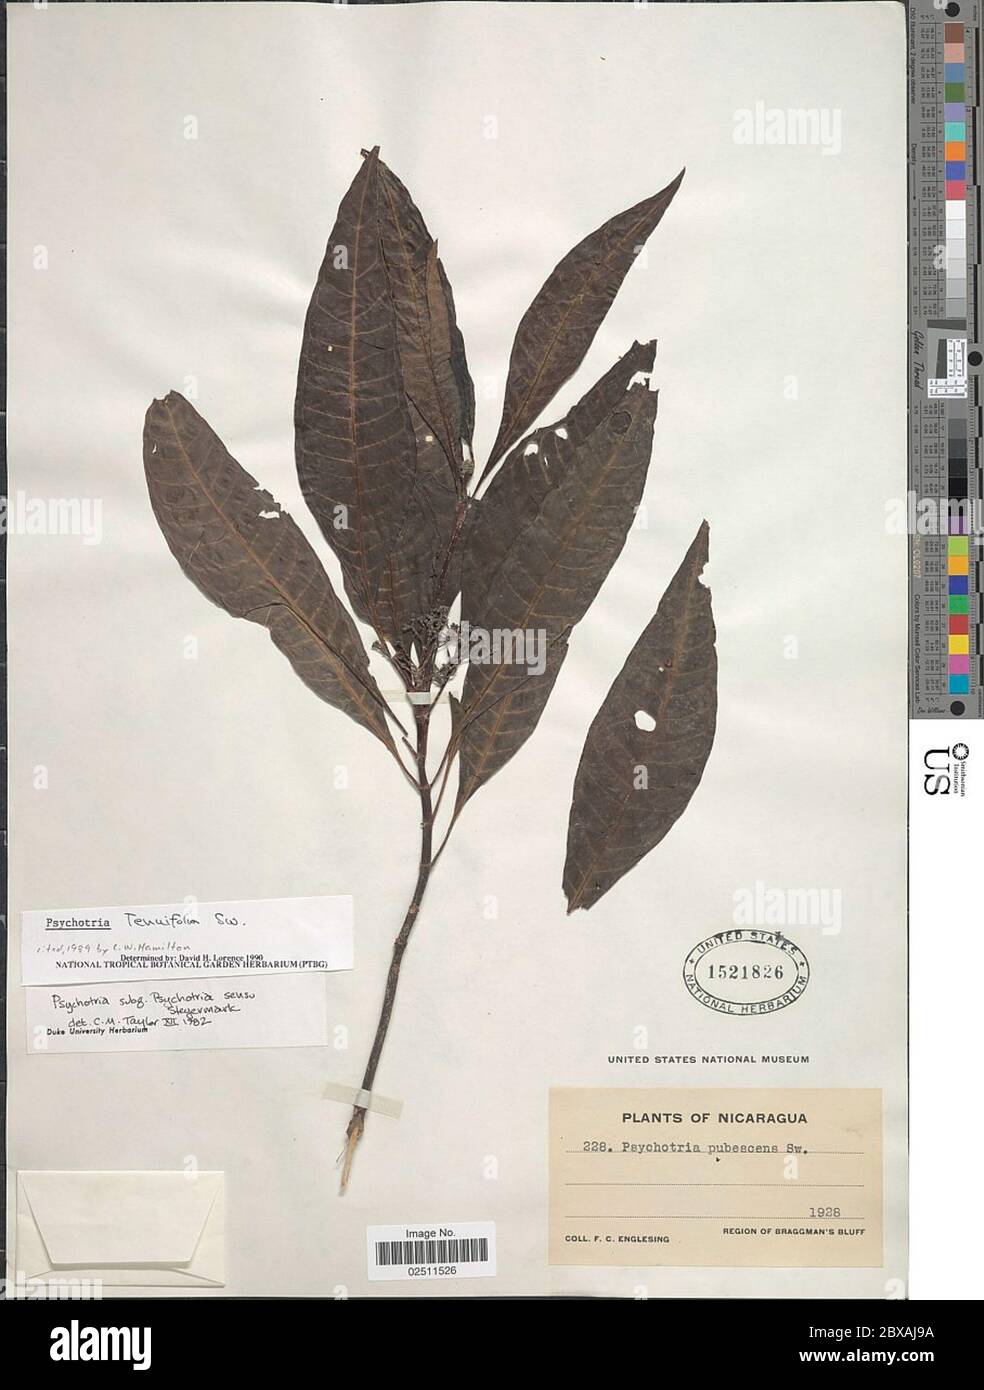 Psychotria tenuifolia Sw Psychotria tenuifolia Sw. Stock Photo